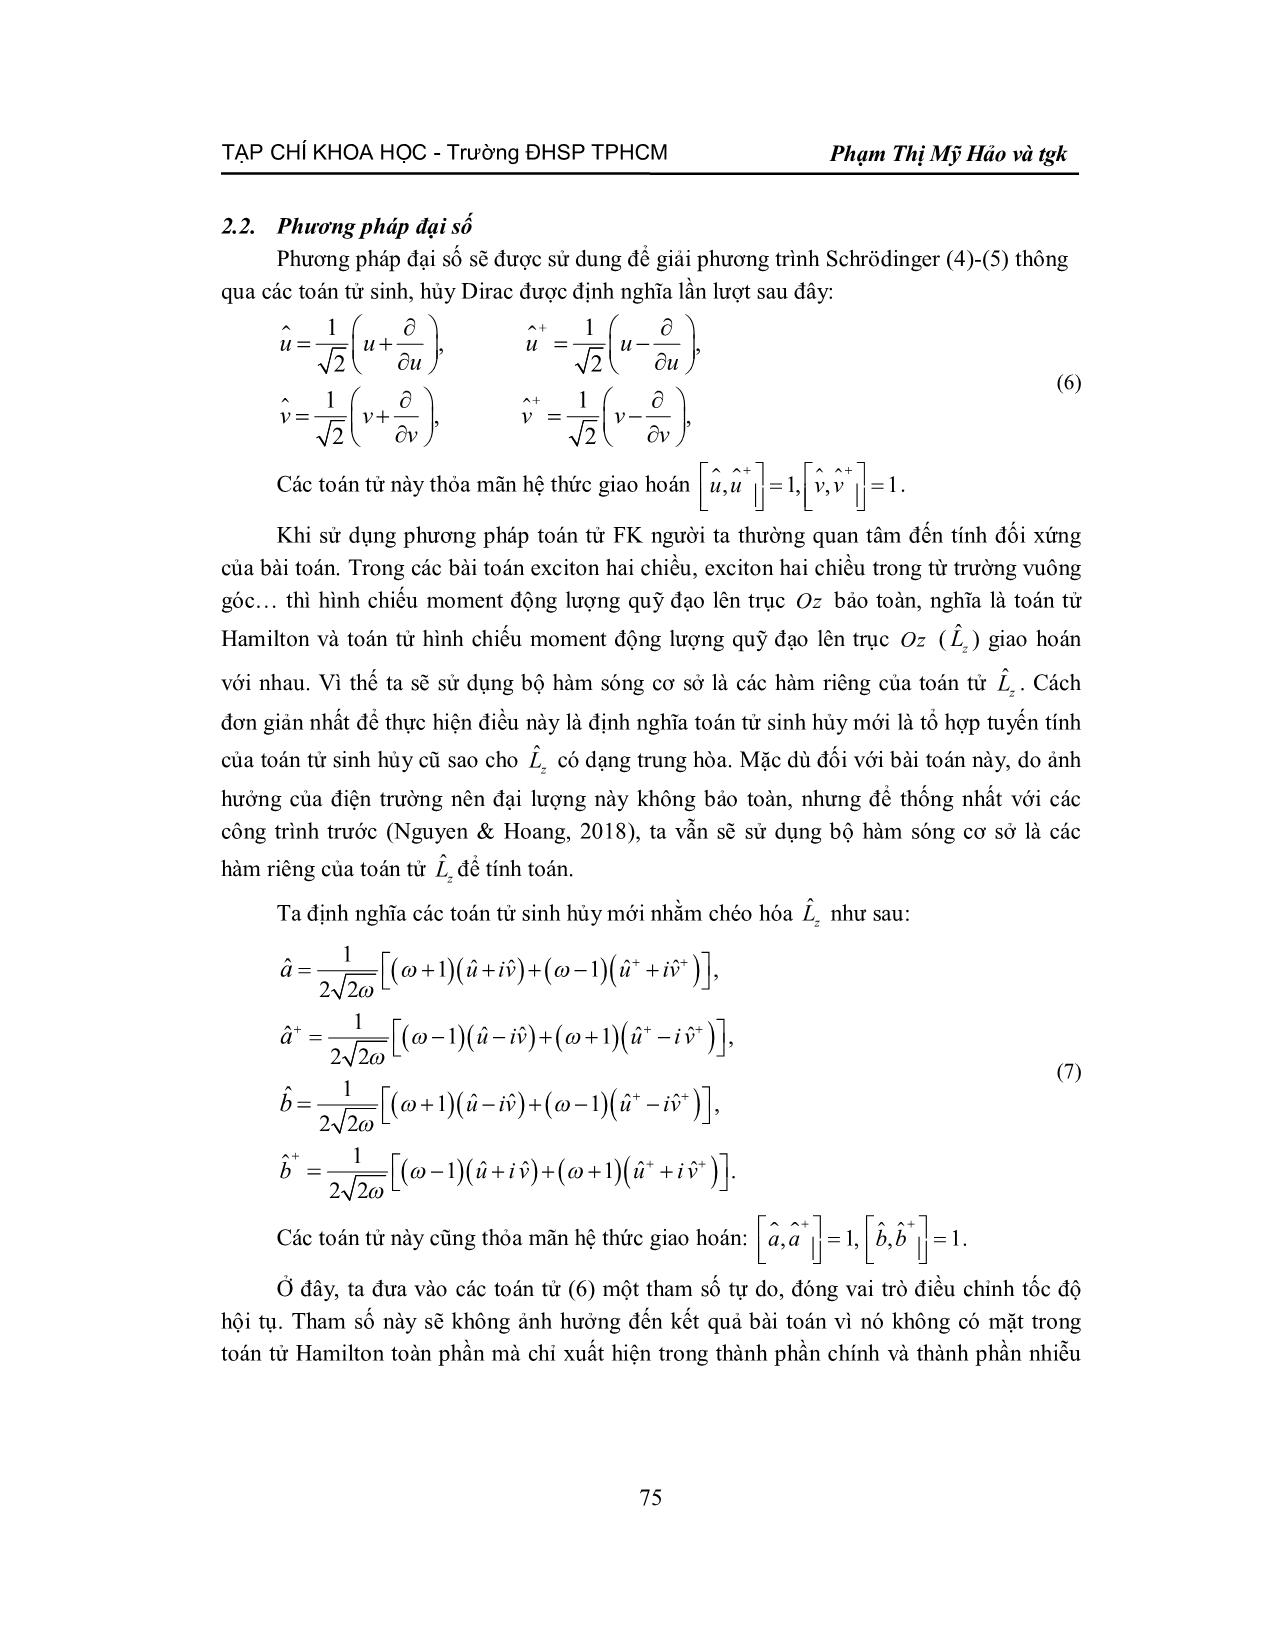 Yếu tố ma trận cho exciton hai chiều trong điện trường trang 4